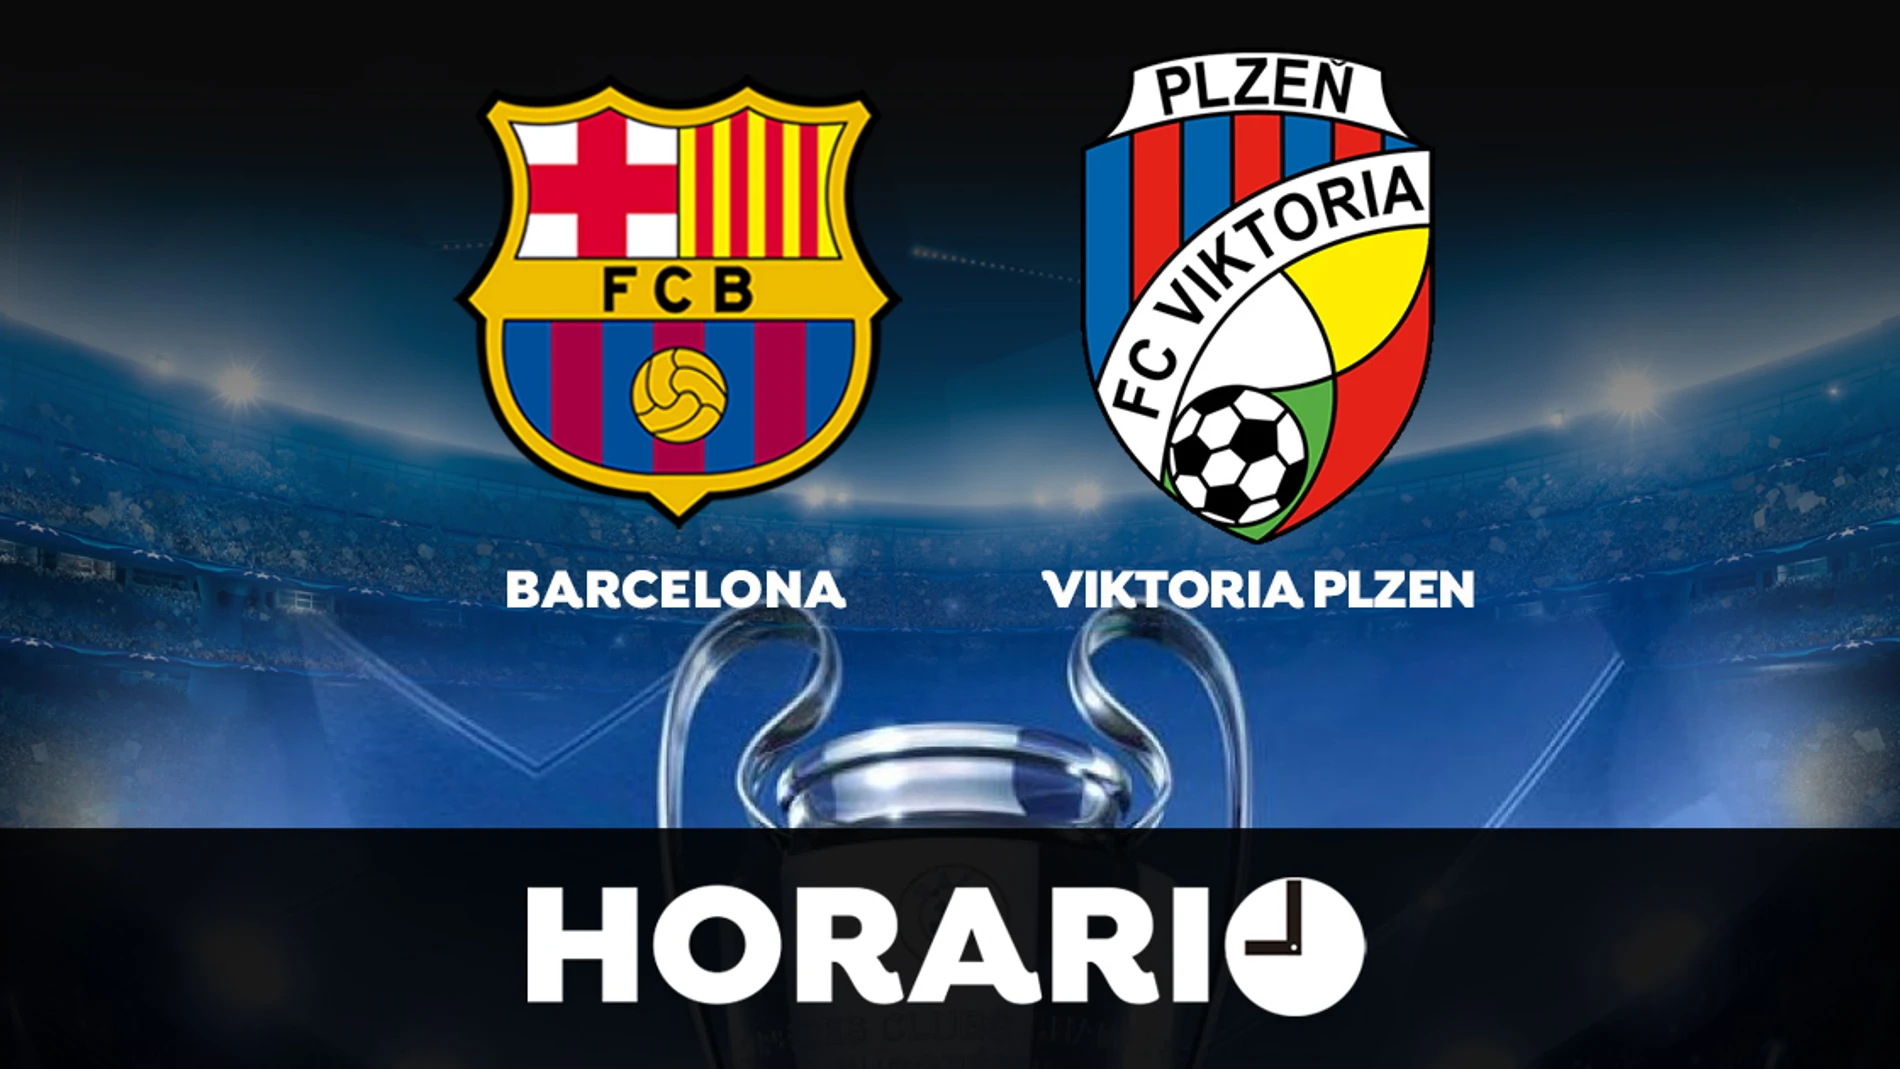 Barcelona - Horario y dónde ver el partido de Champions League en directo